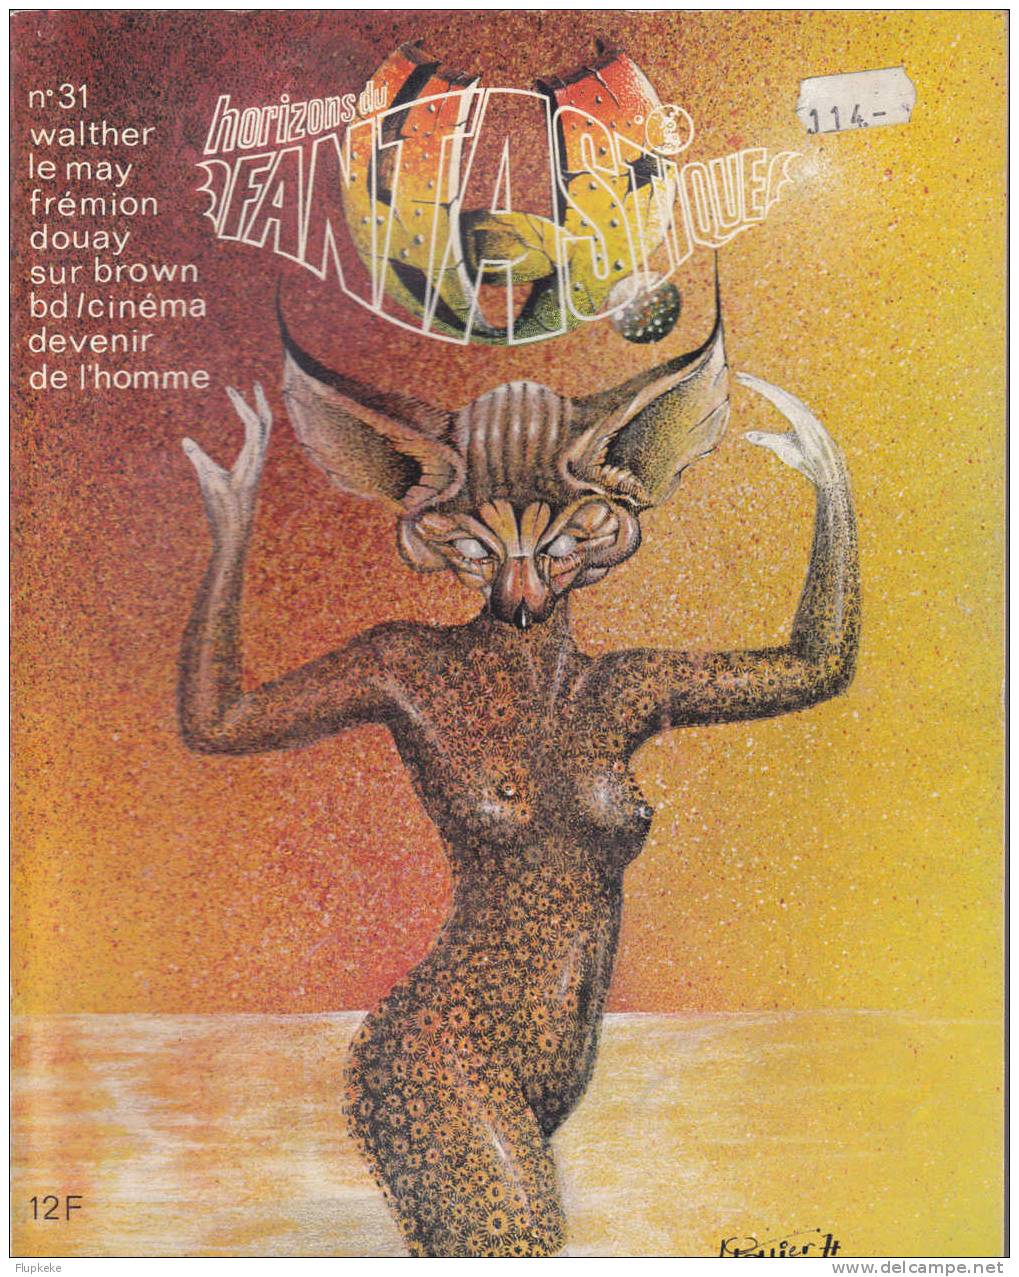 Horizons Du Fantastique 31 Janvier 1975 Couverture Jean-Marc Patier - Fanzines